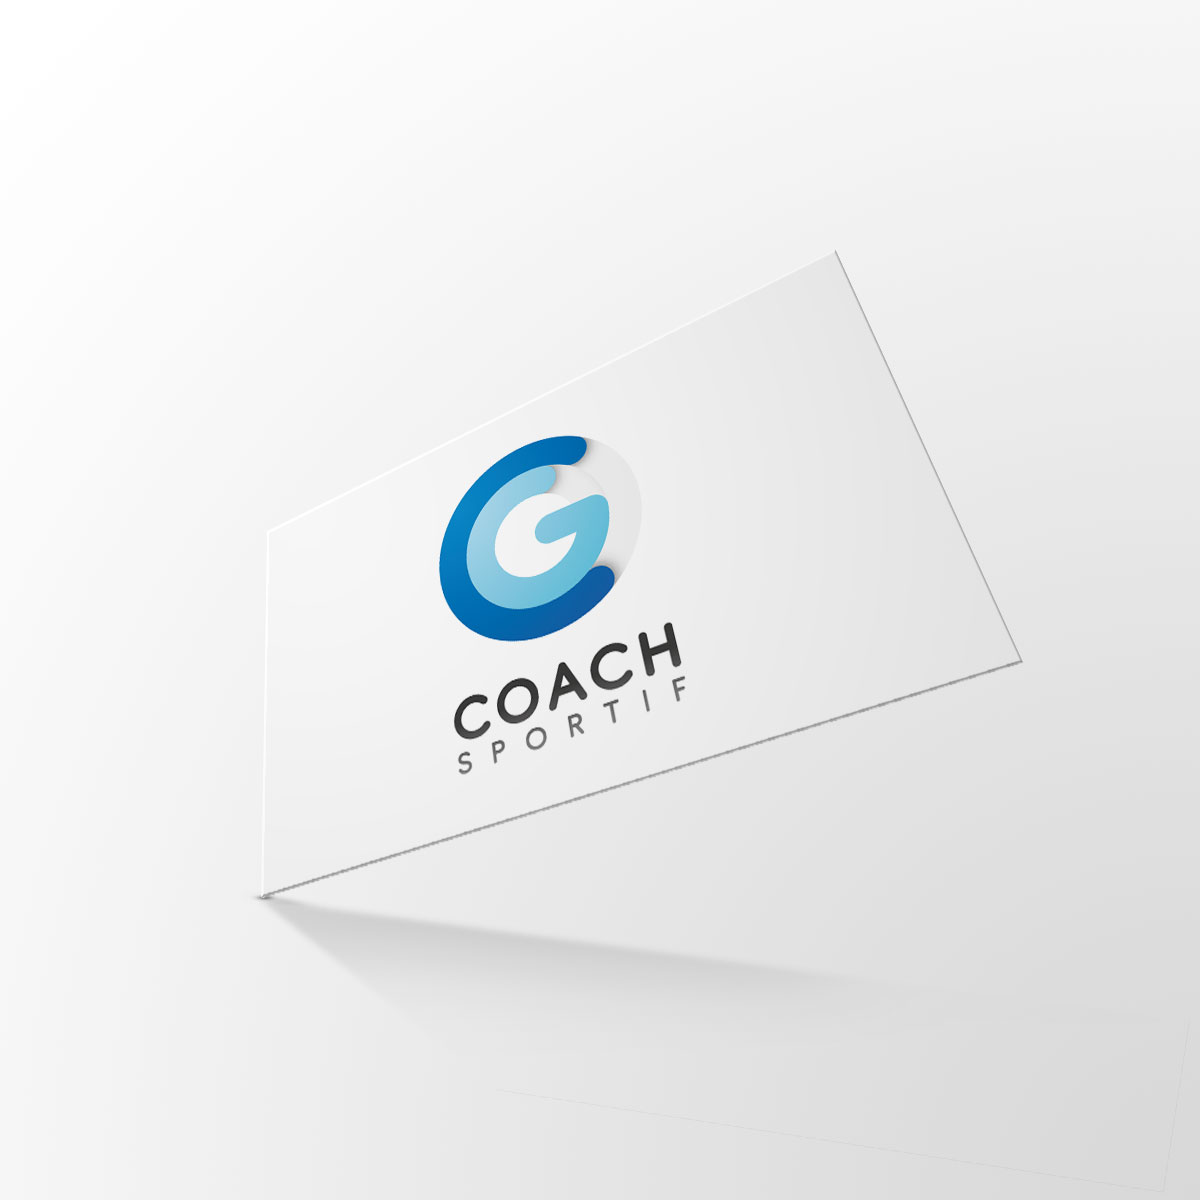 photo couverture de CG Coach Sportif : mise en situation du recto de la carte de visite sur fond gris clair